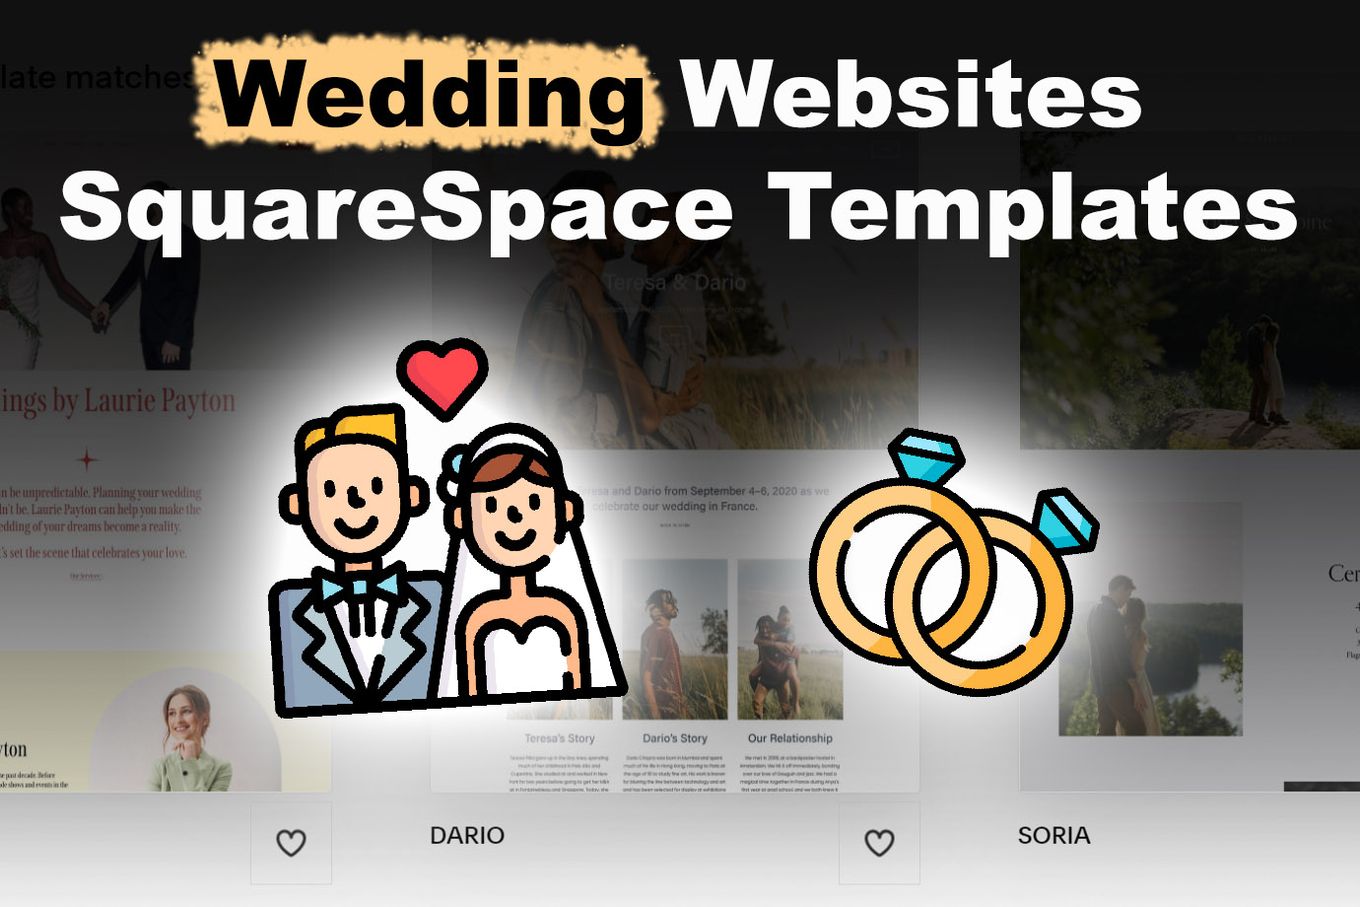 squarespace-wedding-website-examples-templates-alvaro-trigo-s-blog